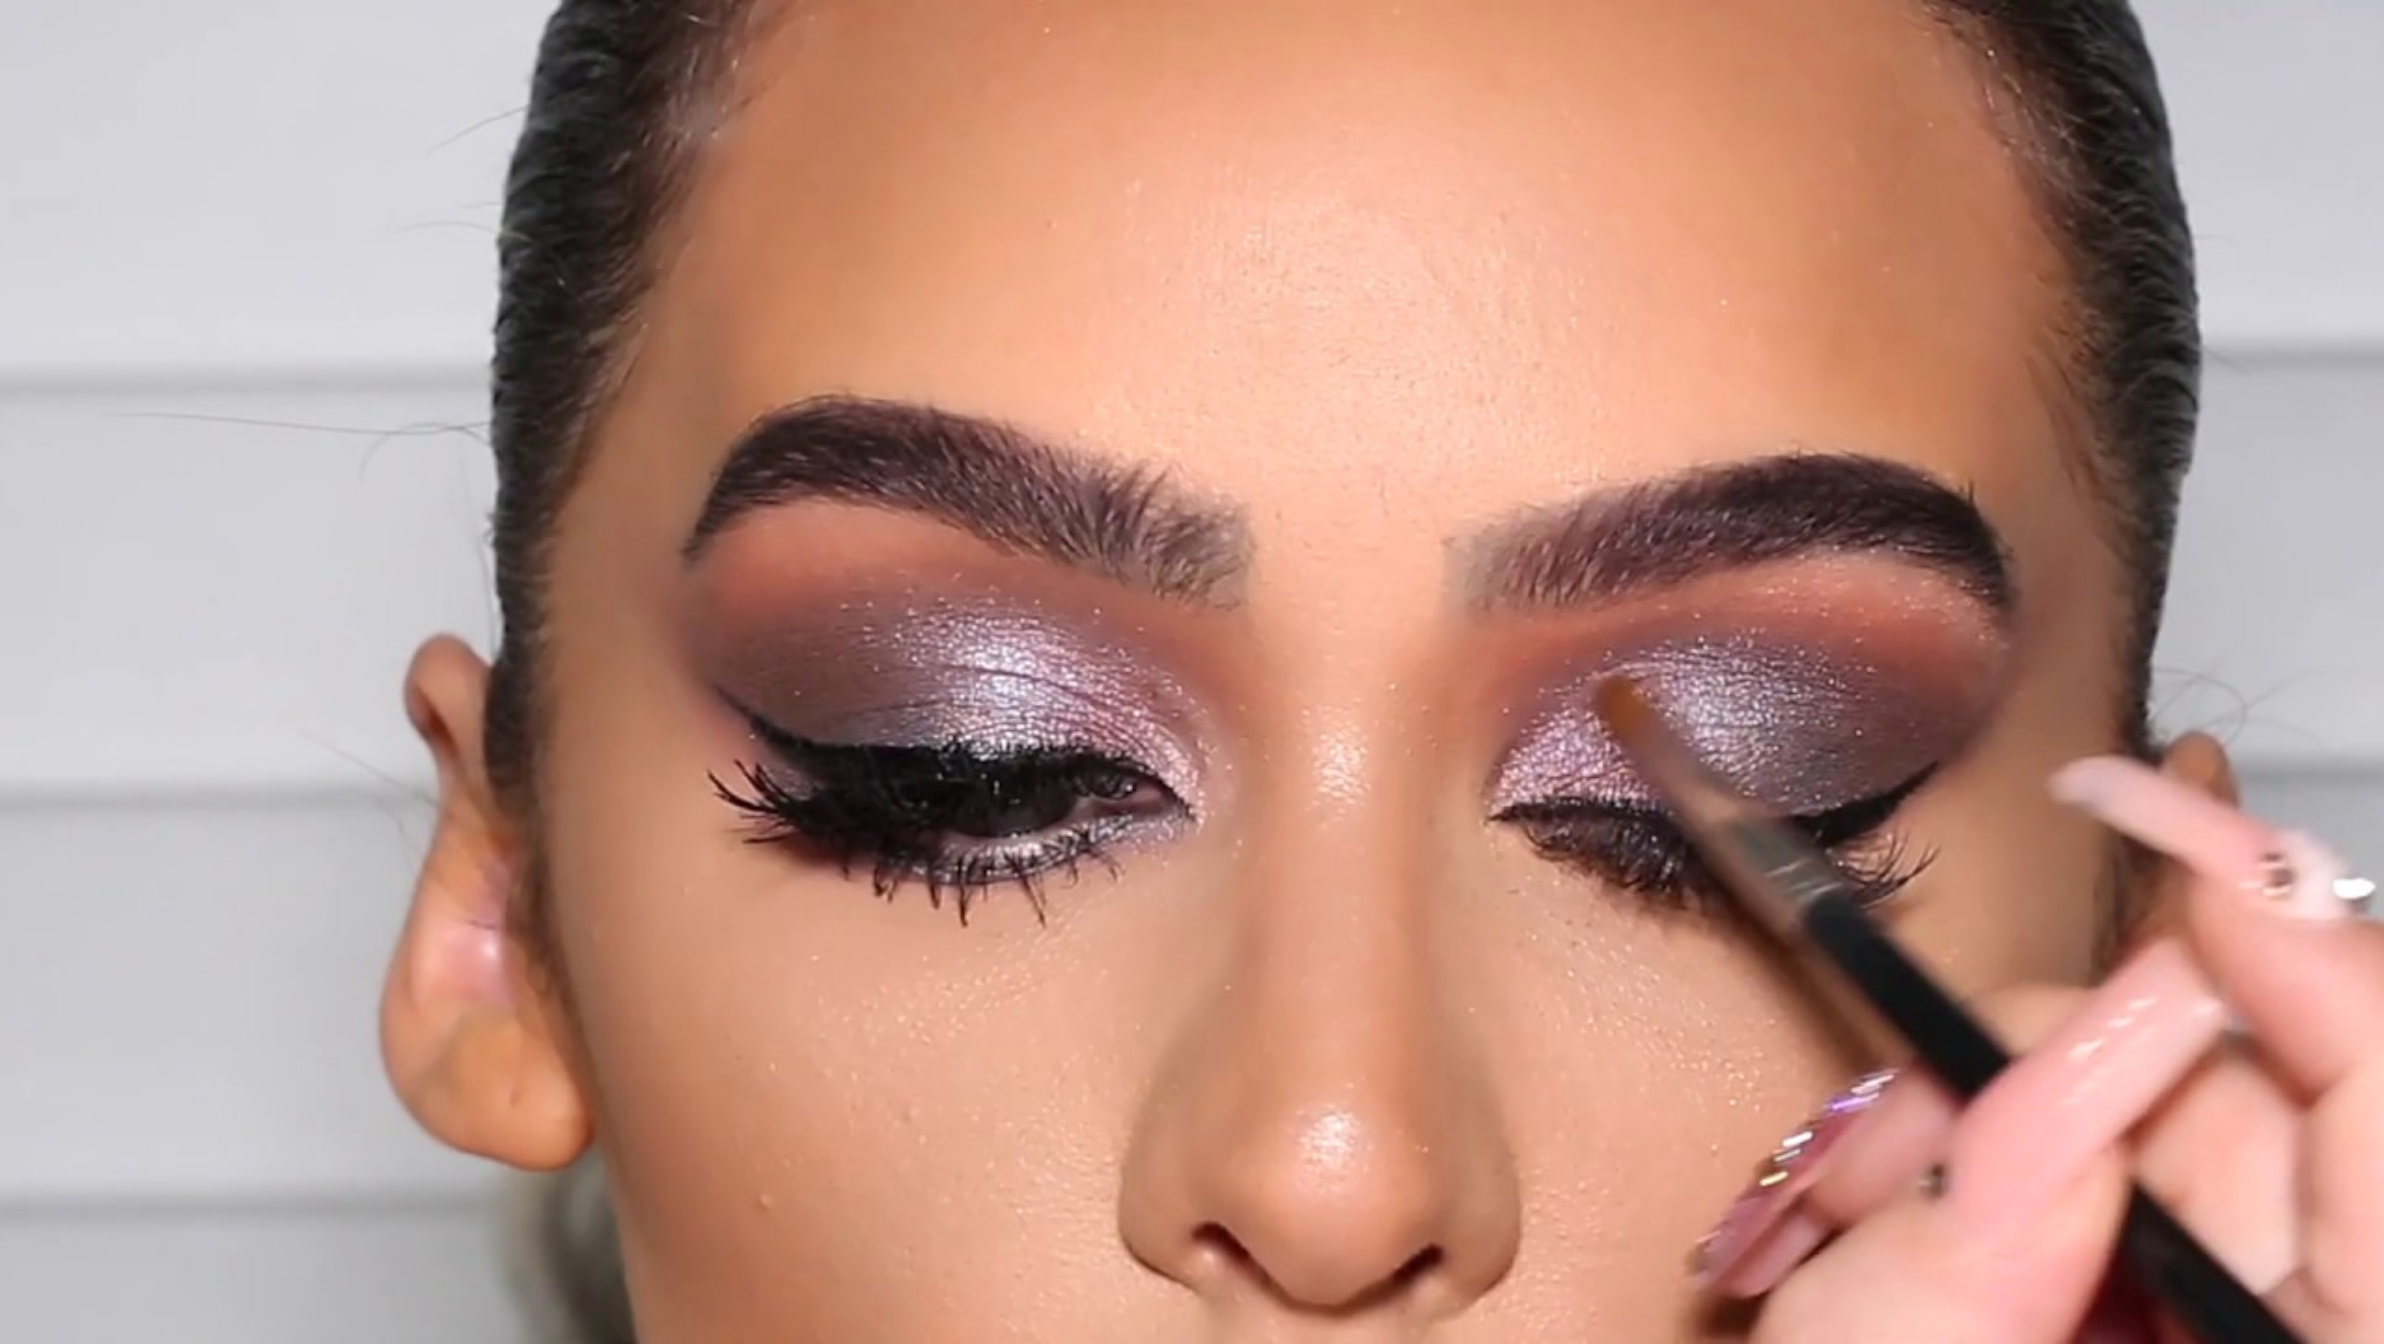 woman applying purple eyeshadow on eyelid with brush.